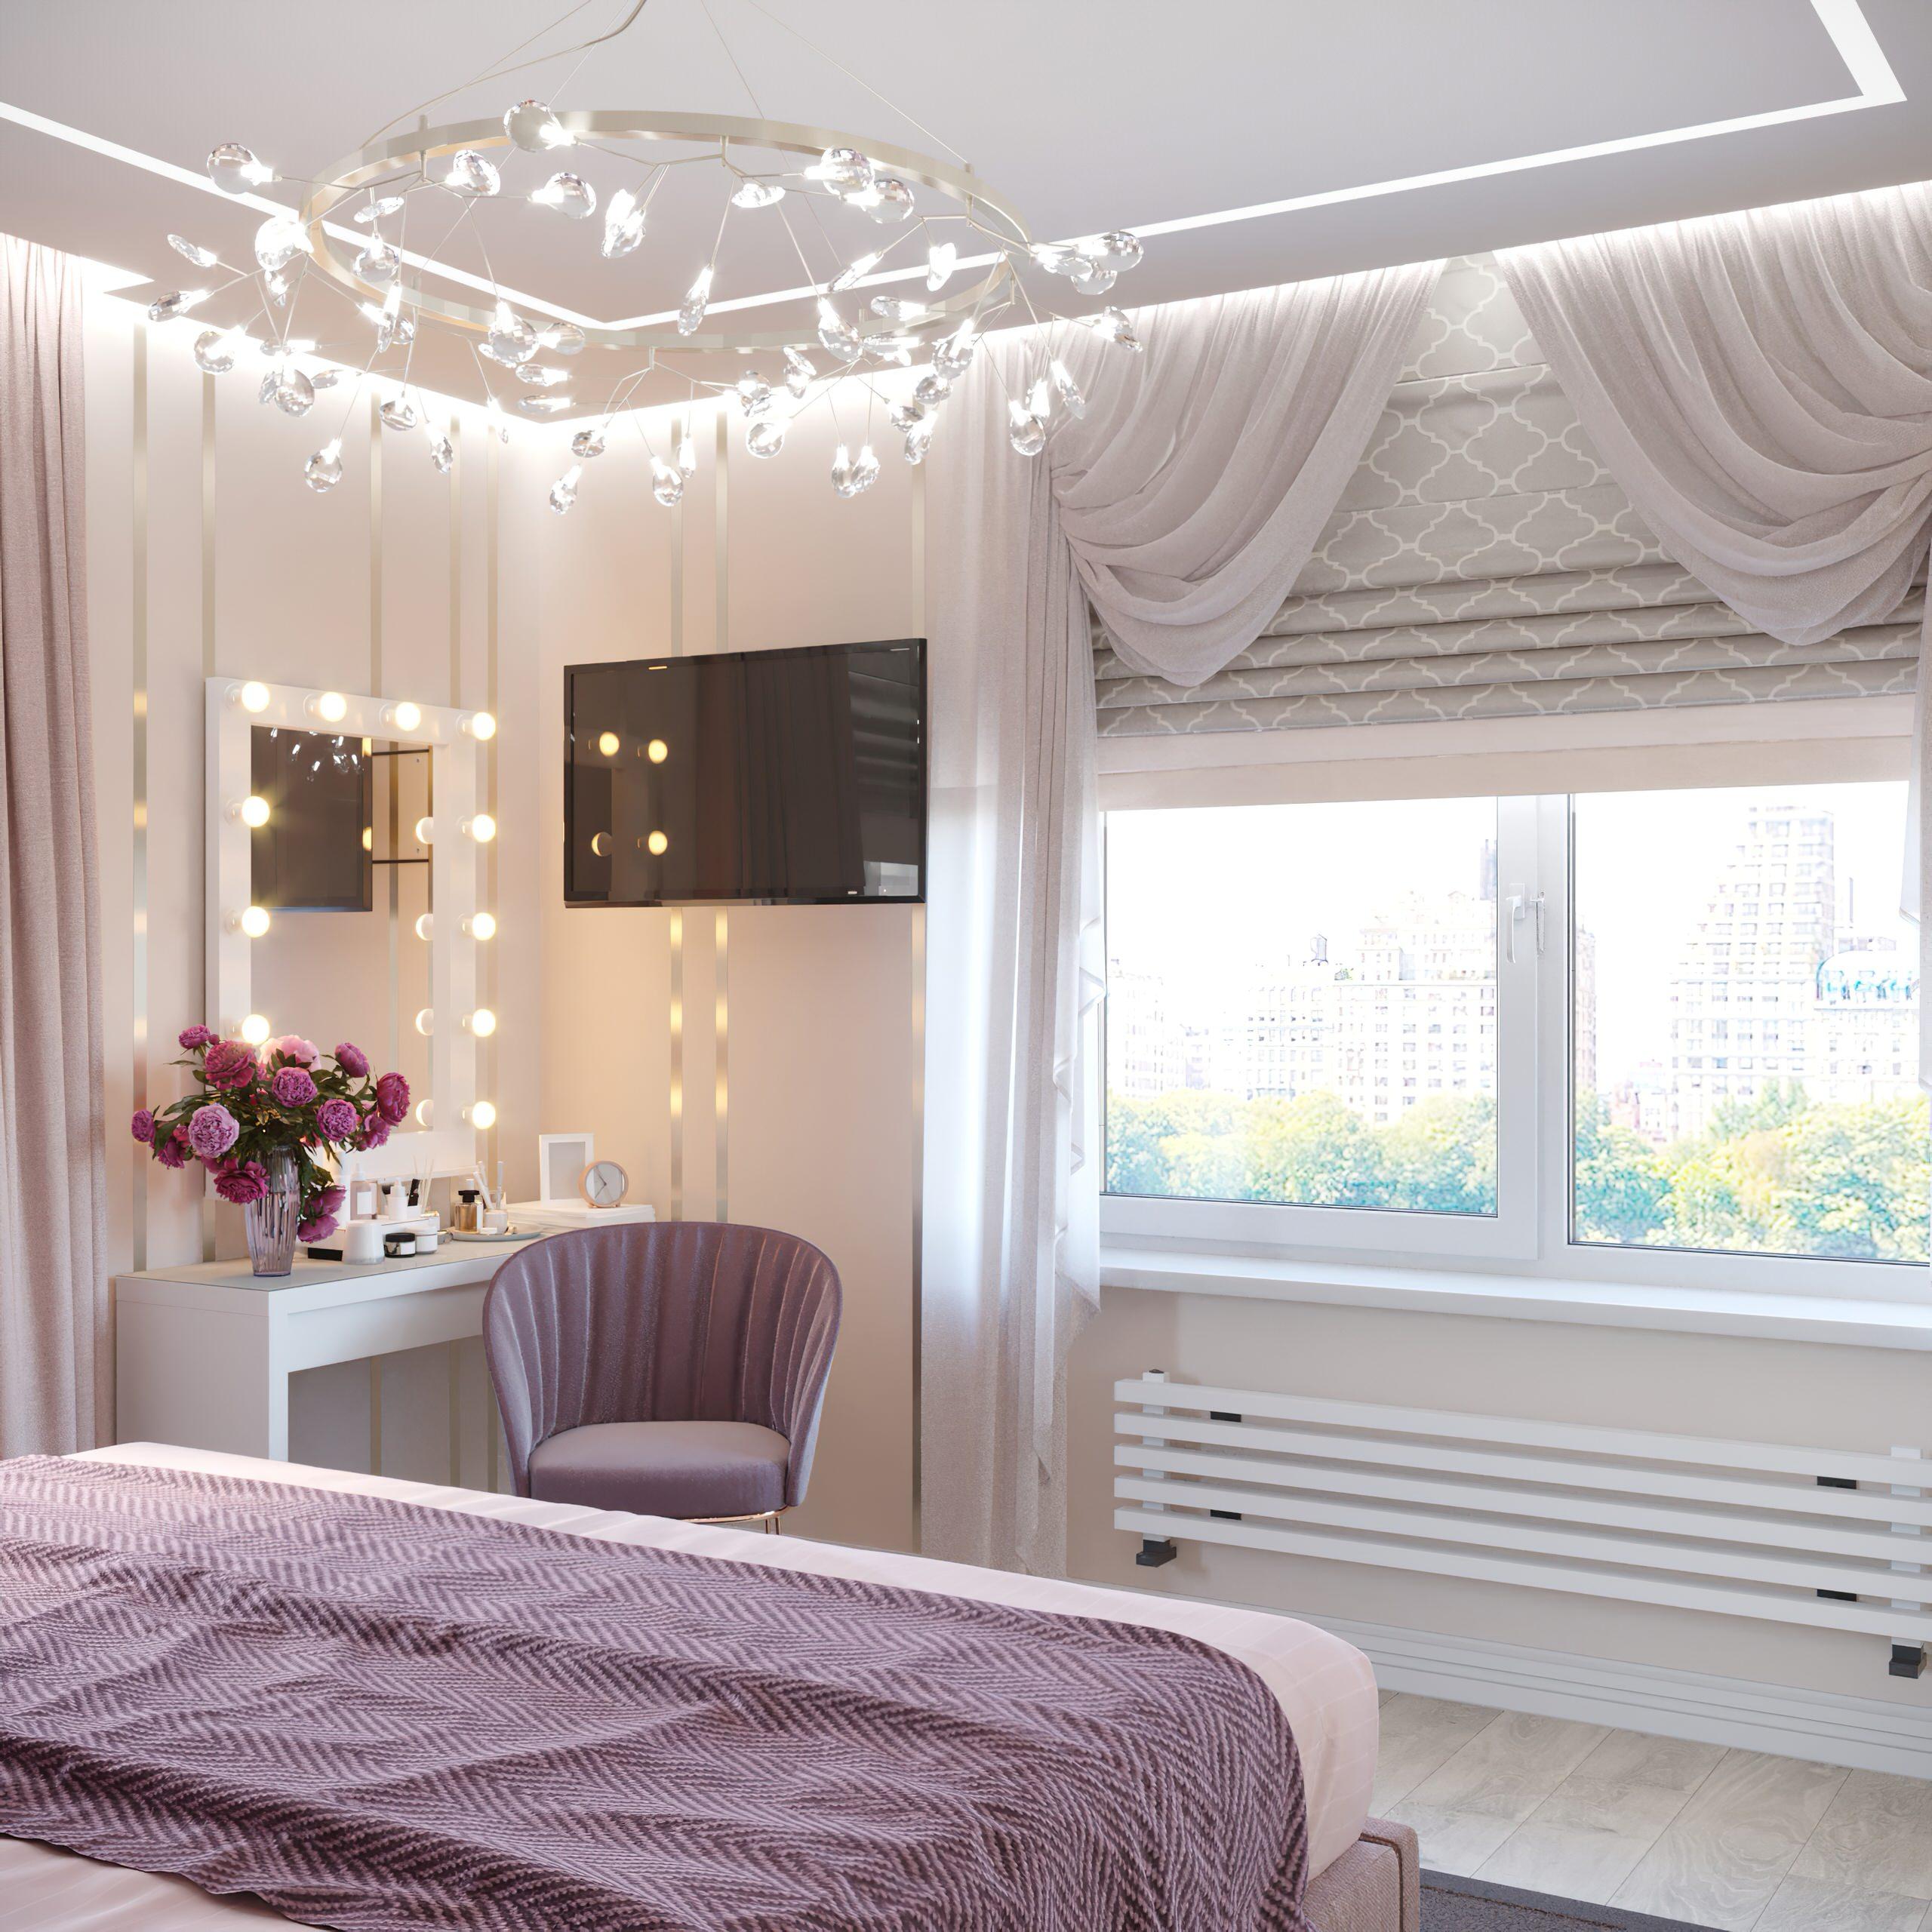 Интерьер спальни cветовыми линиями, подсветкой настенной, подсветкой светодиодной и светильниками над кроватью в неоклассике